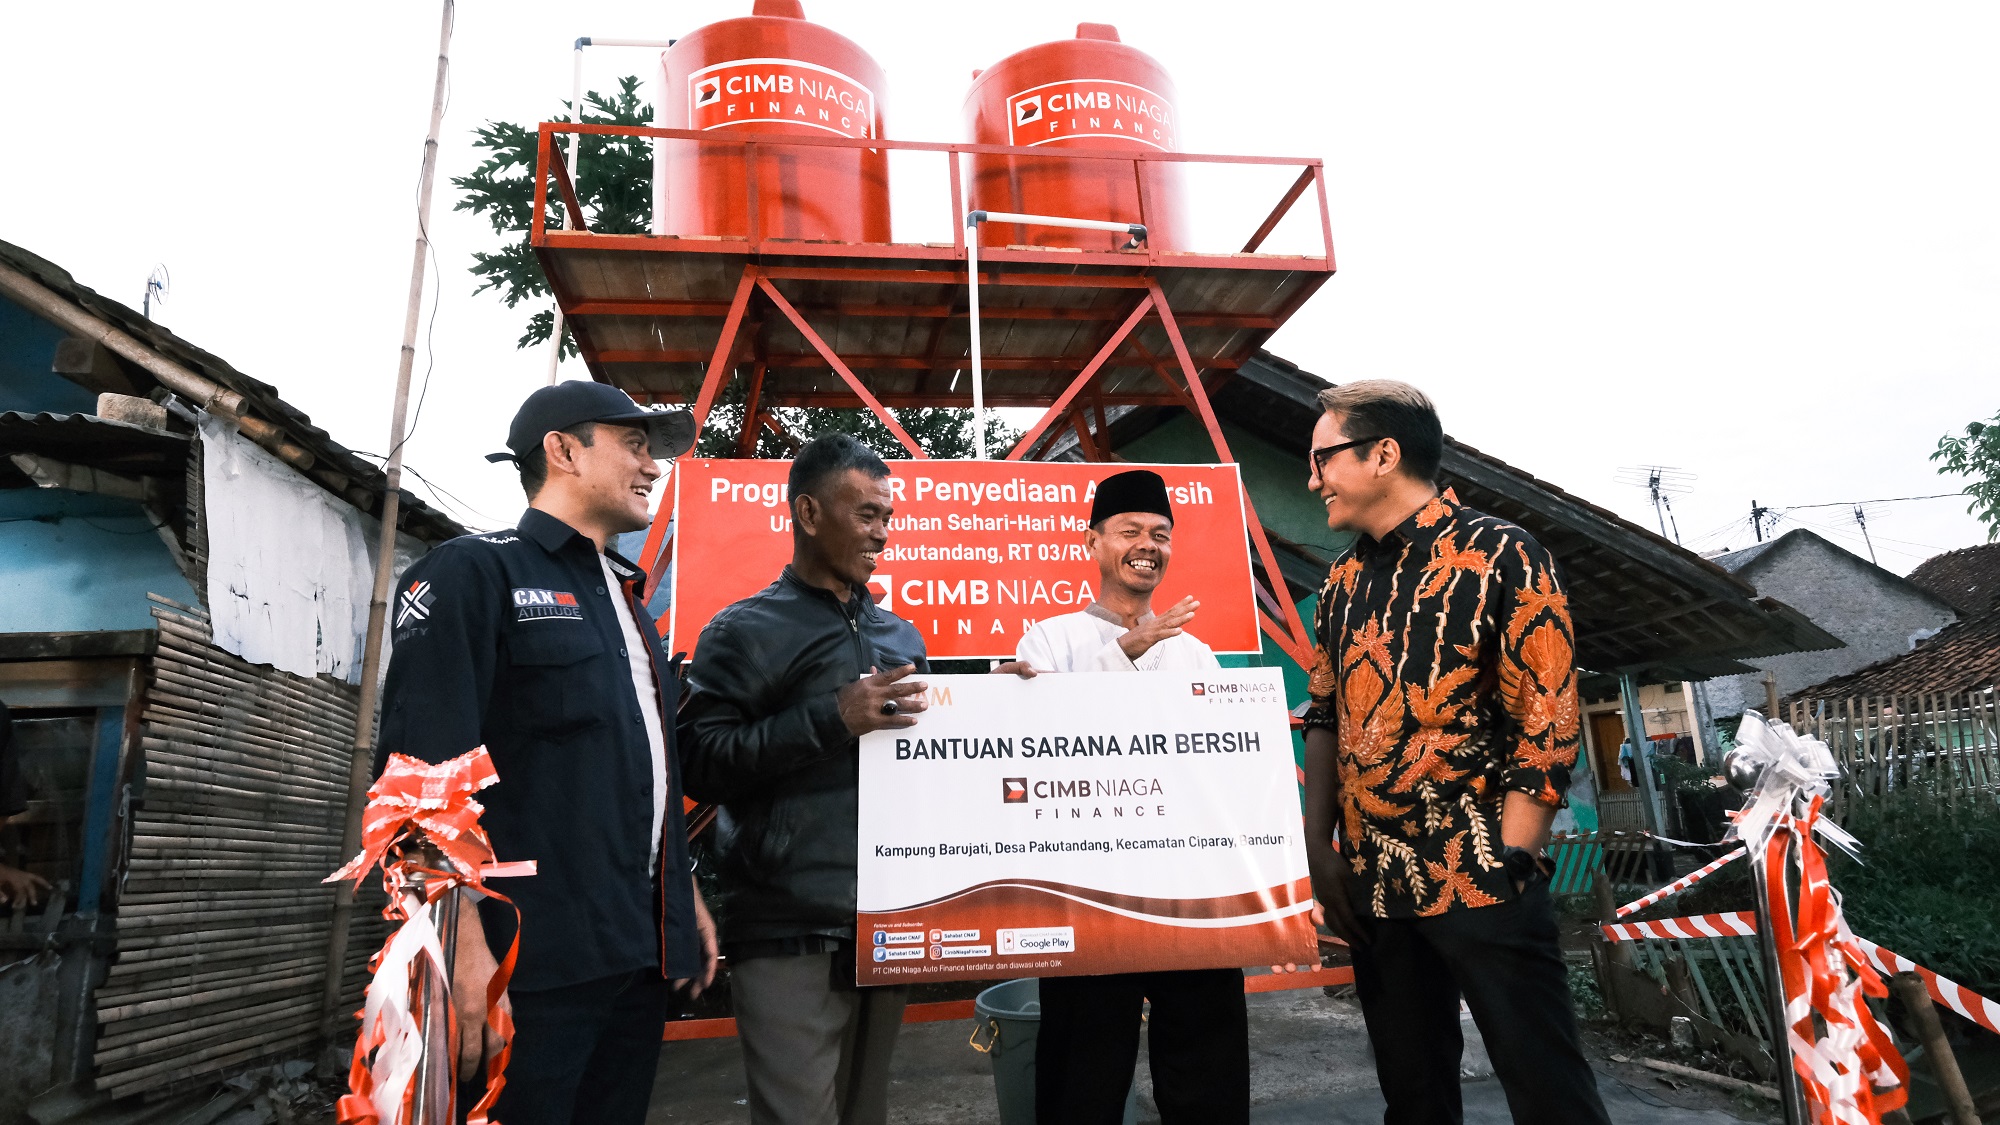 CIMB Niaga Finance Sediakan Sarana Air Bersih untuk Warga Ciparay - Bandung